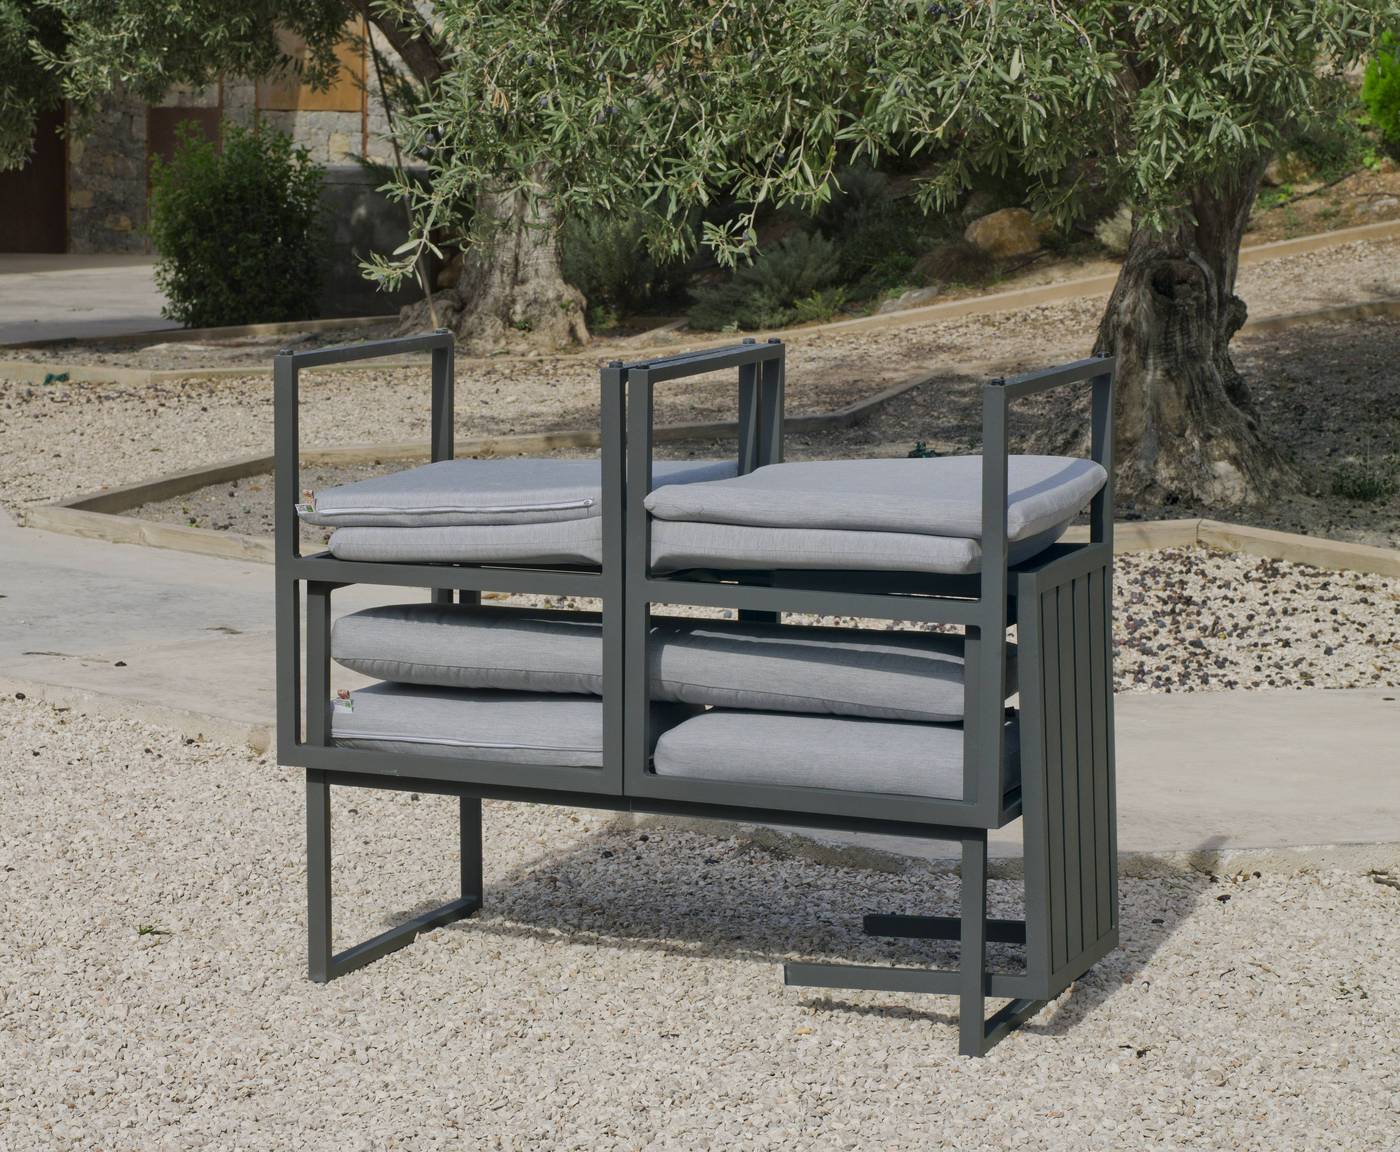 Set Aluminio Long Beach-8 - Conjunto de aluminio apilable: sofá 3 plazas + 2 sillones + mesa de centro + cojines. Disponible en color blanco o antracita.